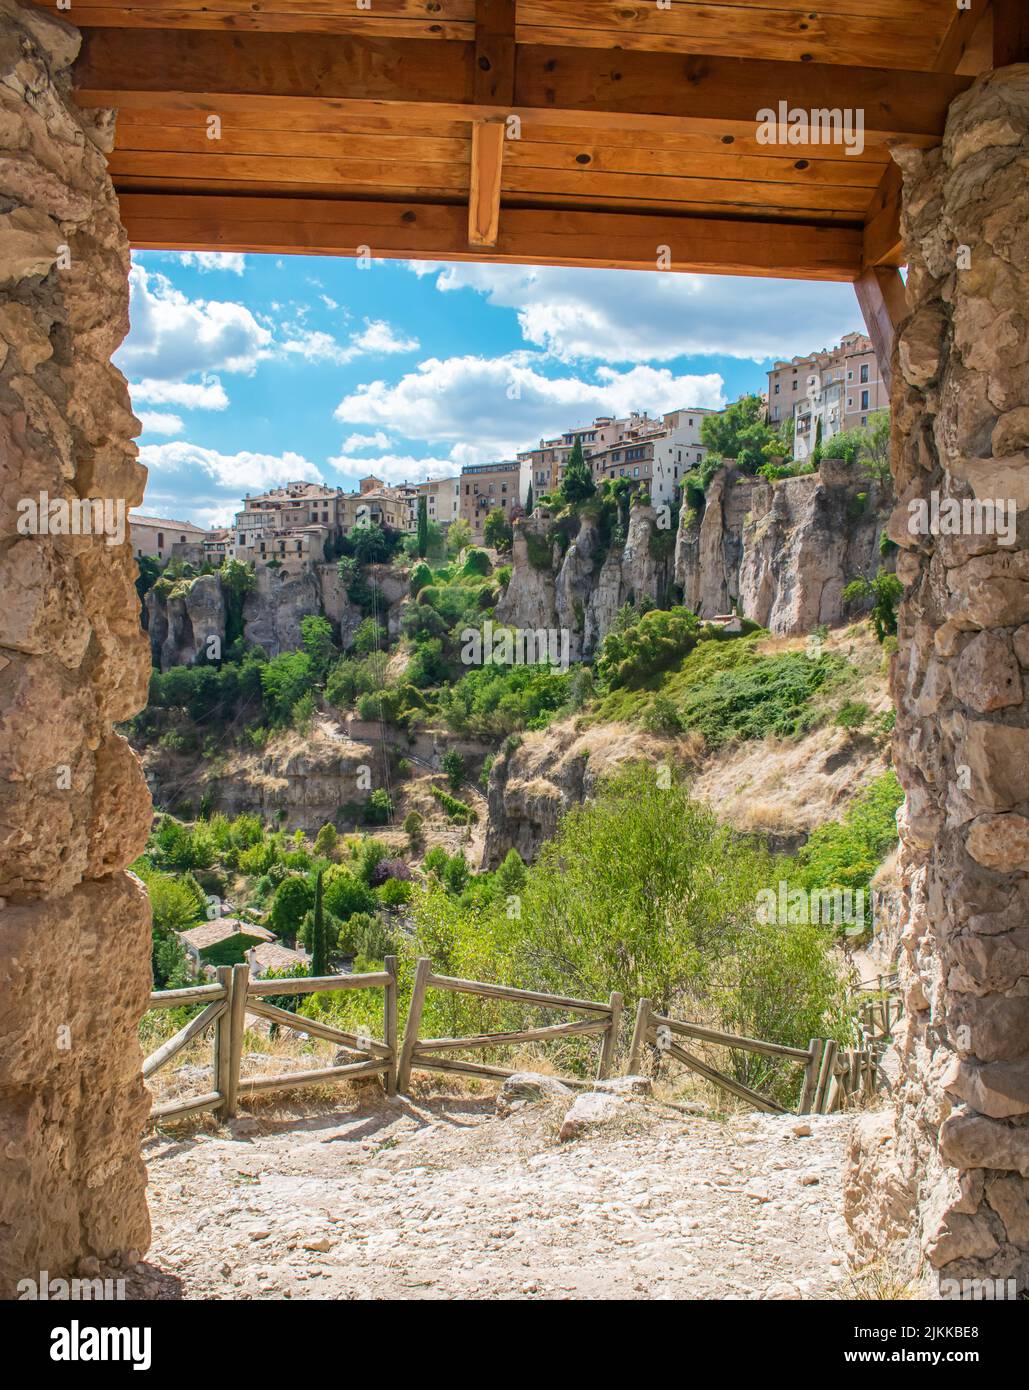 Vista de la ciudad de Cuenca a través del antiguo marco de una puerta rural, España Stock Photo